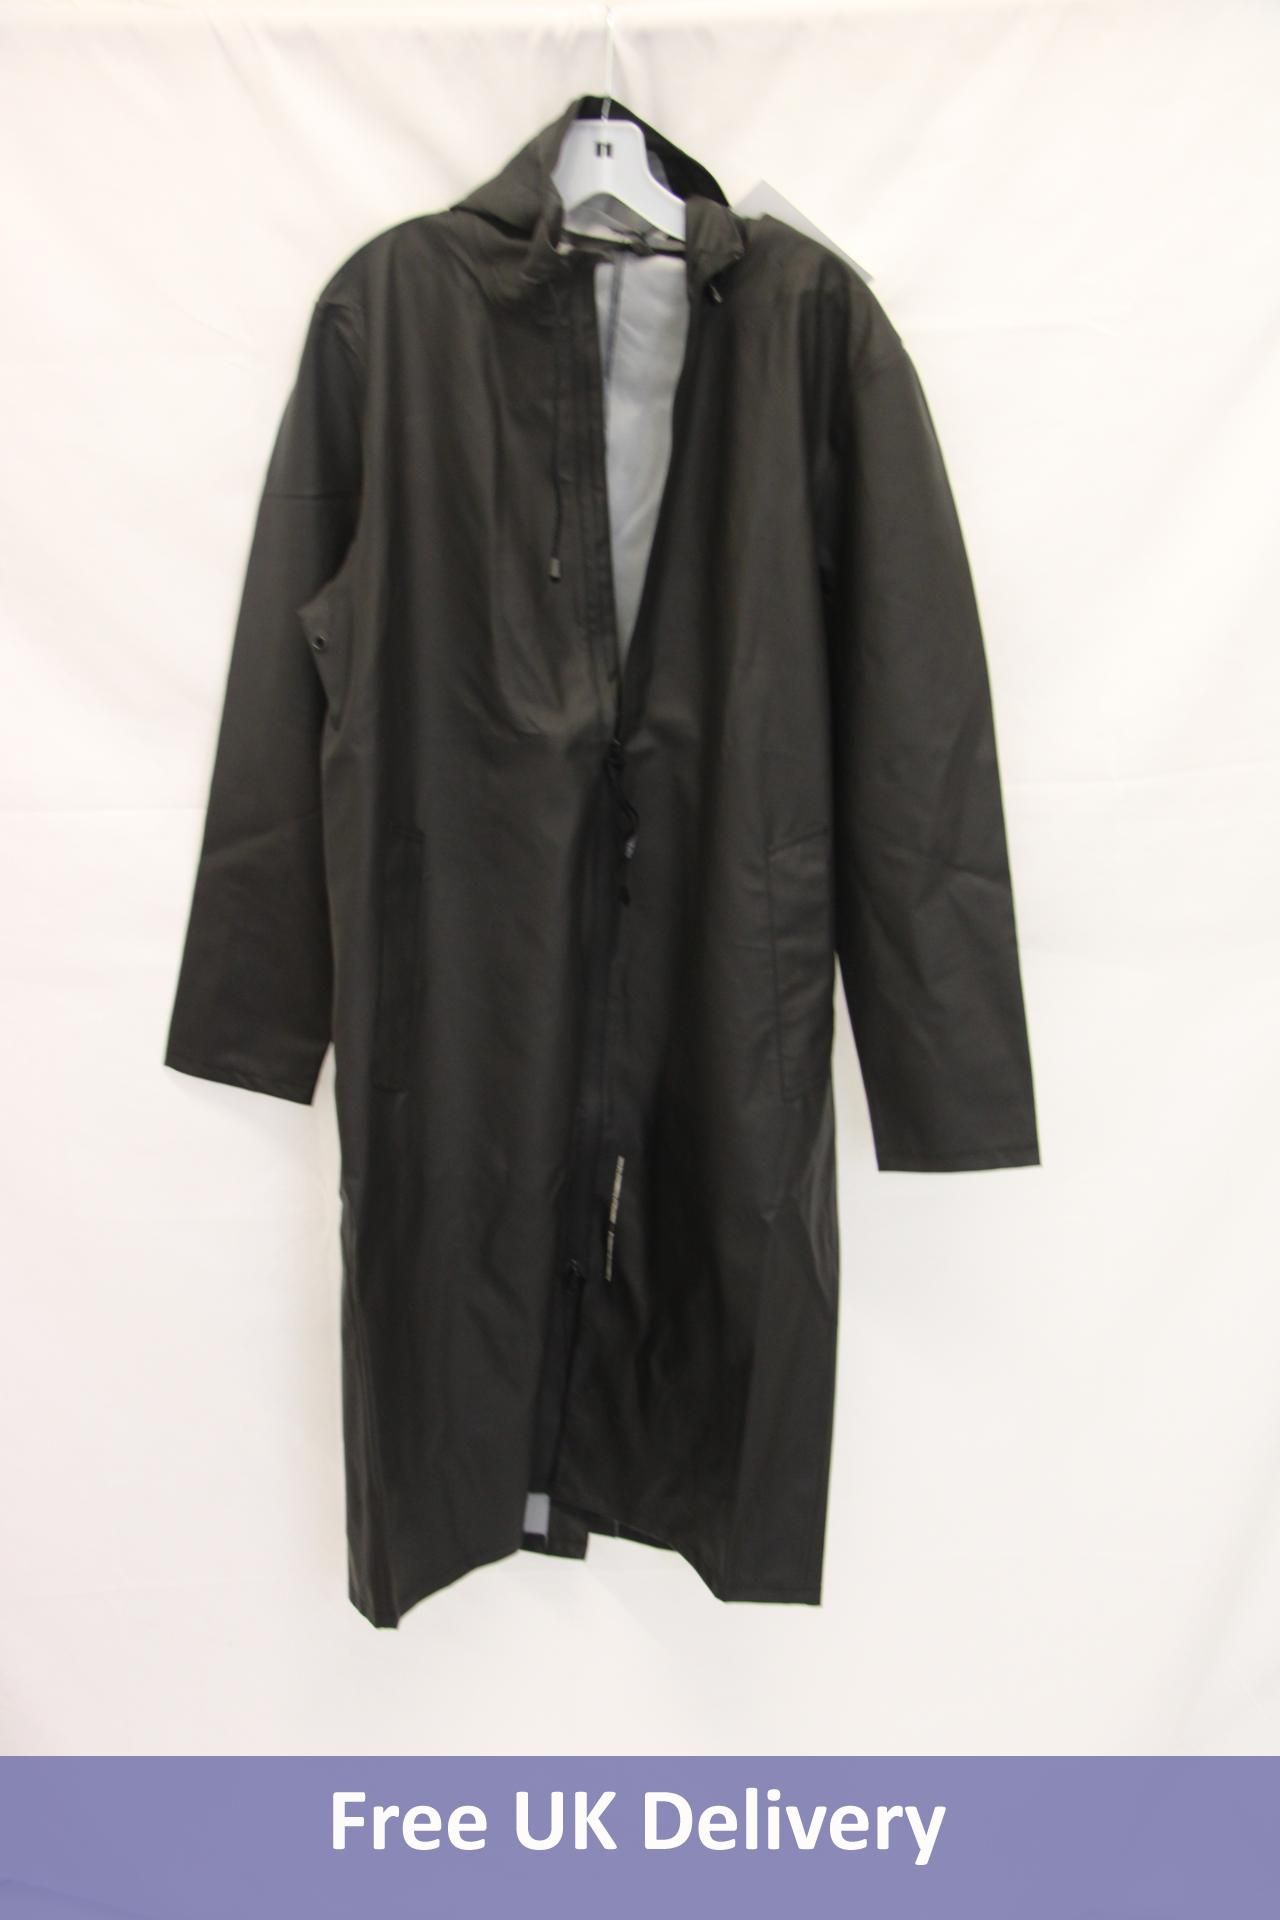 Stutterheim Stockholm Long Lightweight Zip Rain Jacket, Black, Size Large